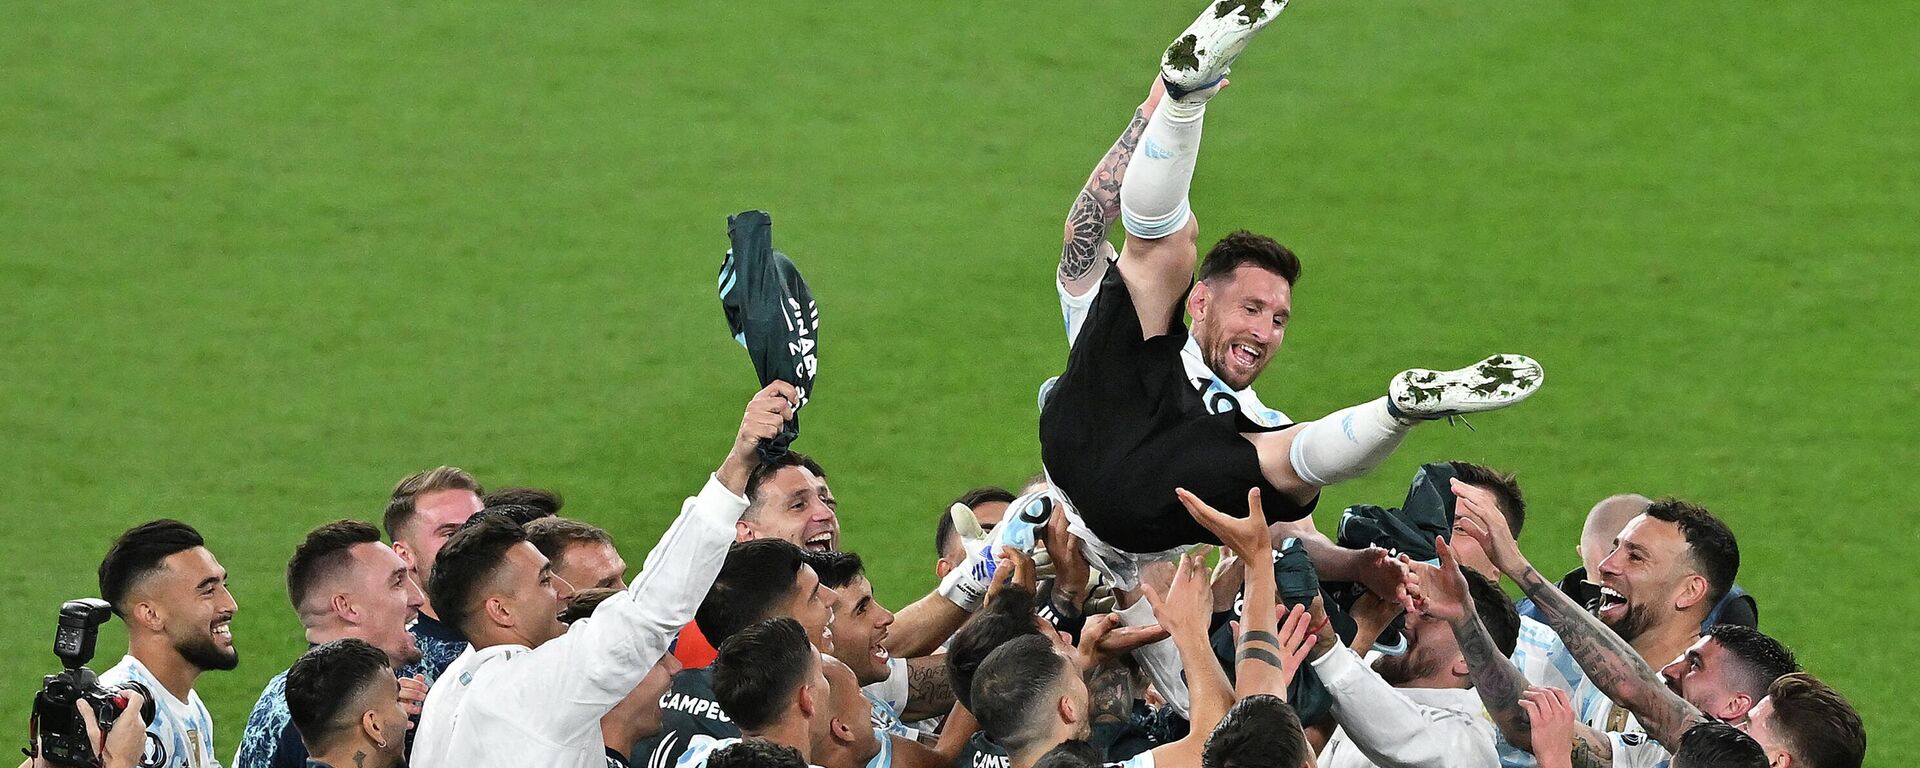 لاعبو فريق الأرجنتين يرفعون المهاجم الأرجنتيني ليونيل ميسي إلى الهواء أثناء احتفالهم بالفوز في مباراة كرة القدم الدولية الودية بين إيطاليا والأرجنتين على ملعب ويمبلي بلندن في 1 يونيو 2022 - سبوتنيك عربي, 1920, 10.12.2022